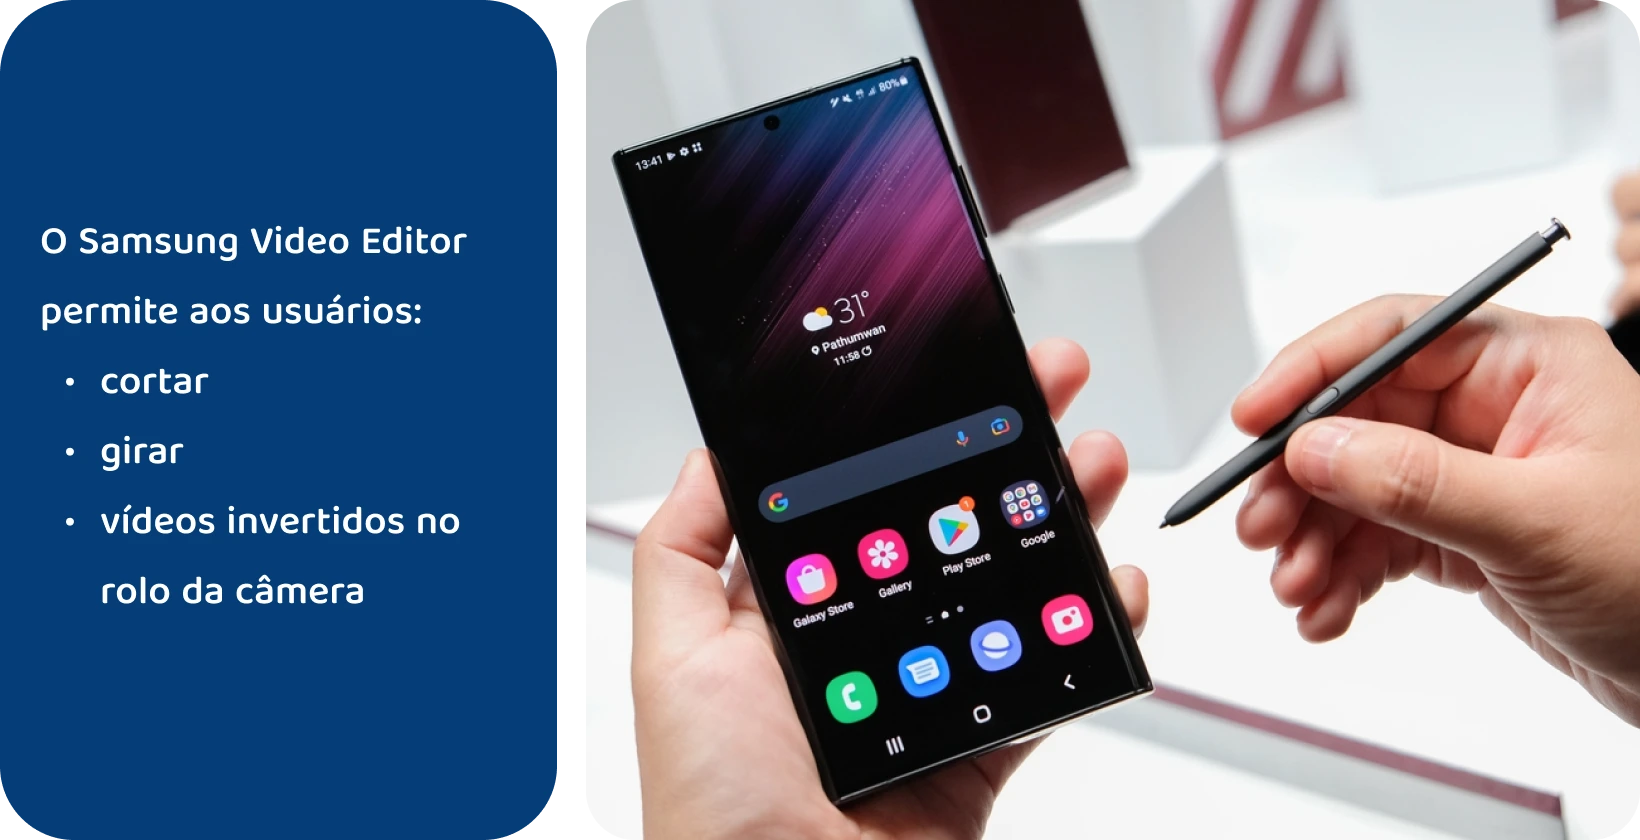 Segurar à mão o dispositivo Samsung Note com a S Pen, pronto para editar e adicionar texto a um vídeo no ecrã.